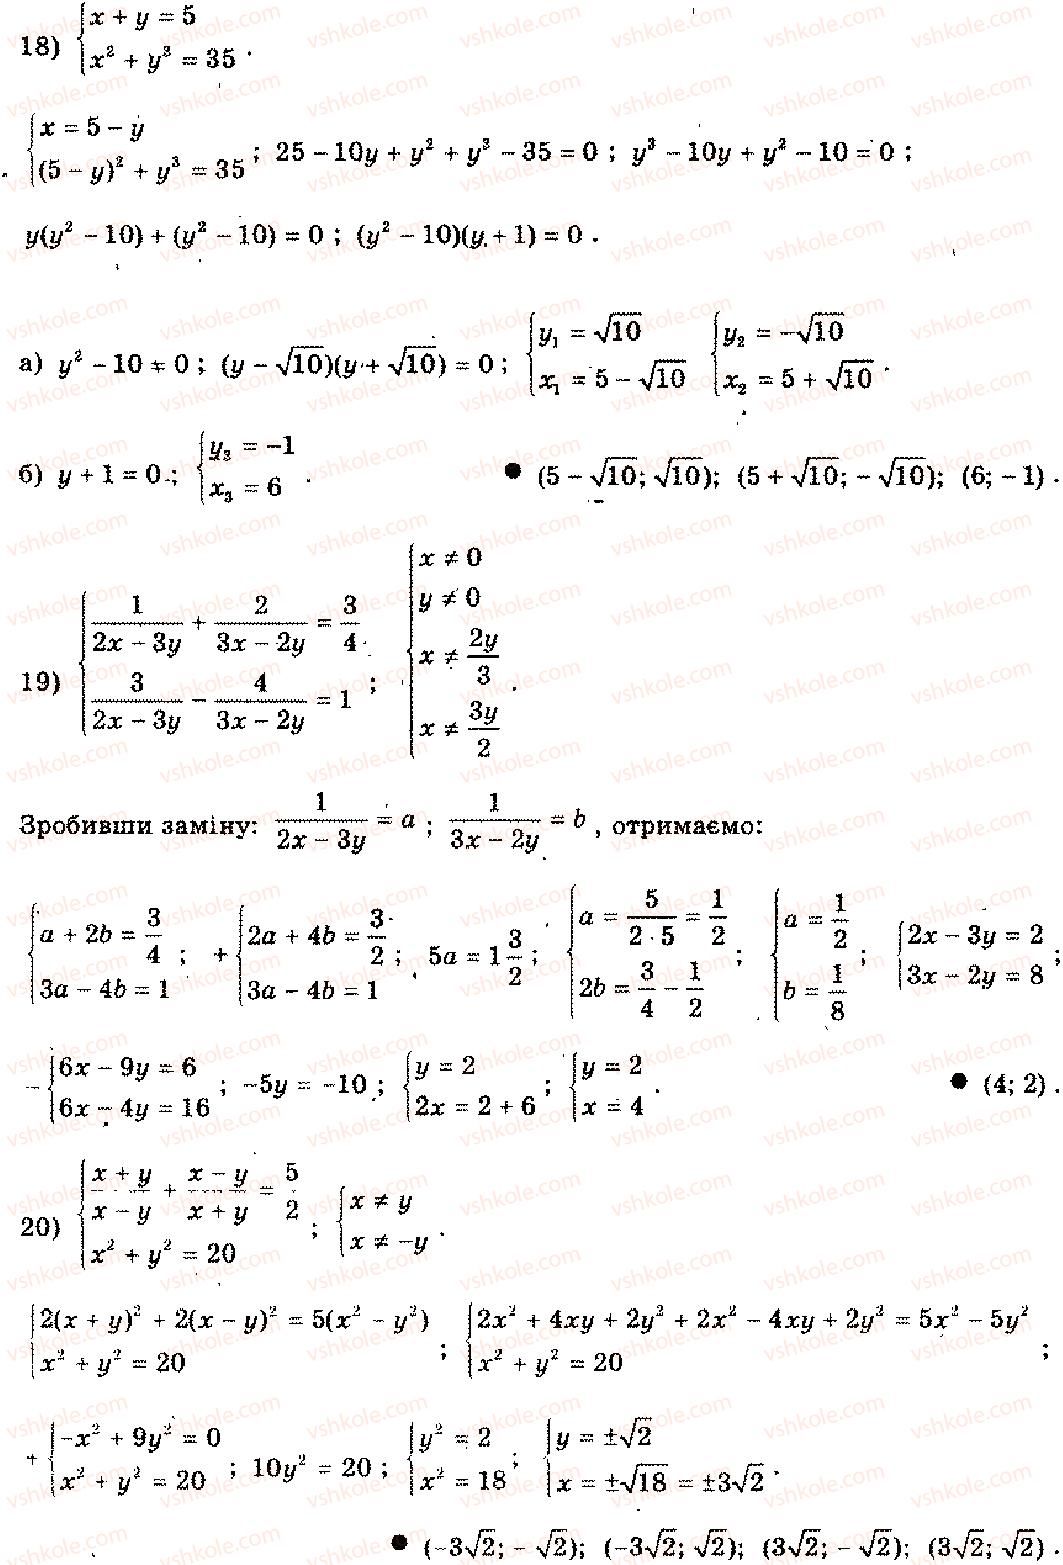 11-algebra-mi-shkil-zi-slepkan-os-dubinchuk-2006--rozdil-15-povtorennya-kursu-algebri-osnovnoyi-shkoli-4-2-rnd580.jpg